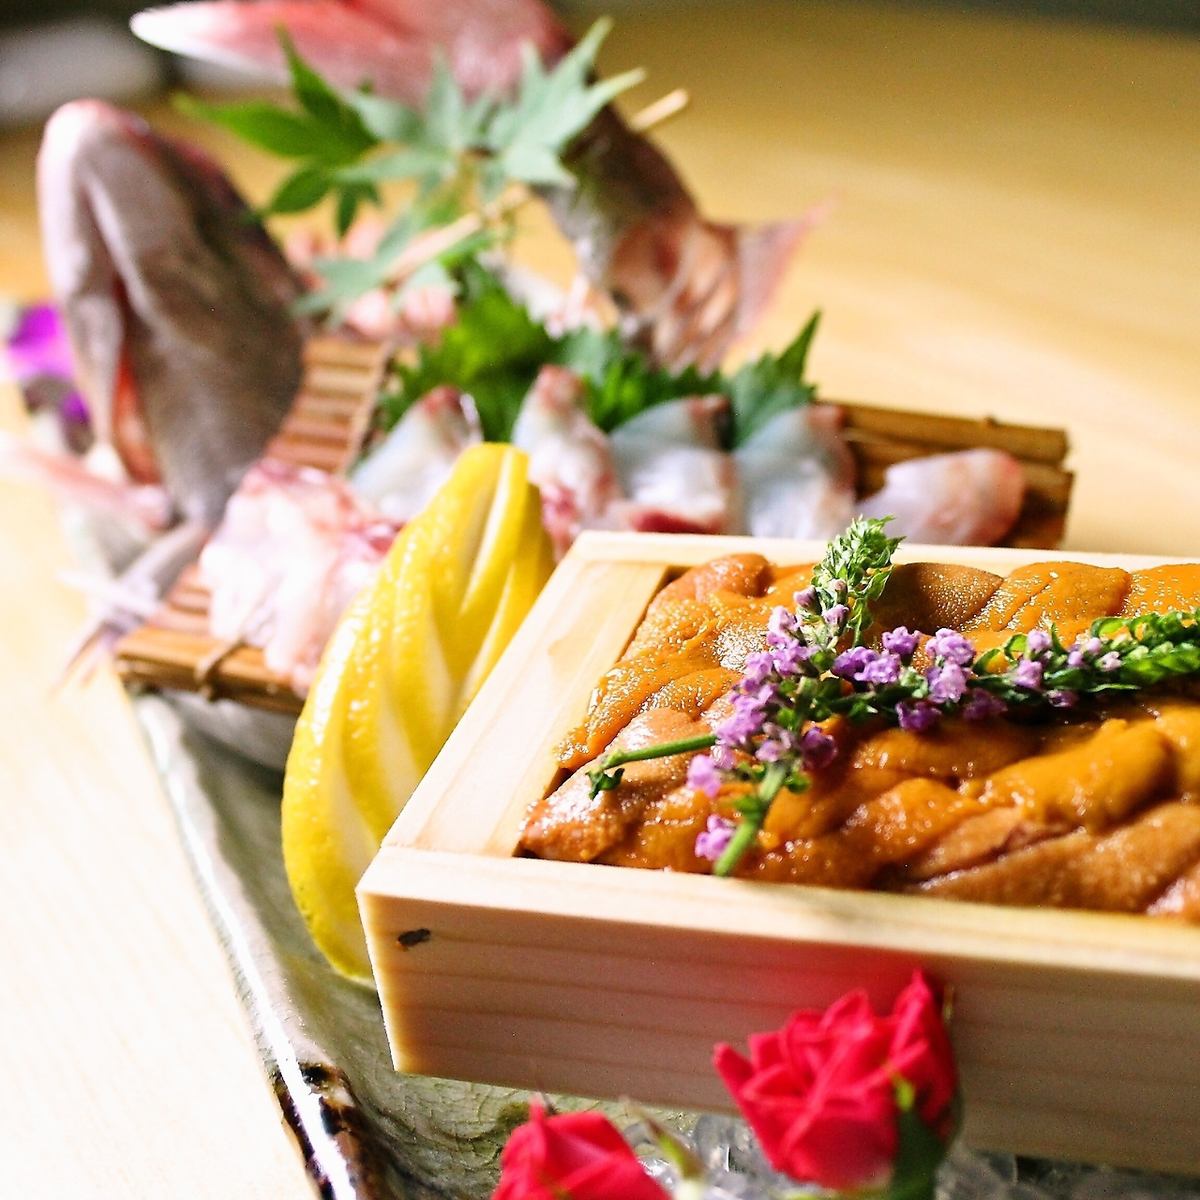 大人聚集的创意日式餐厅！在日本的空间享受我们引以为豪的清酒和特殊食材！